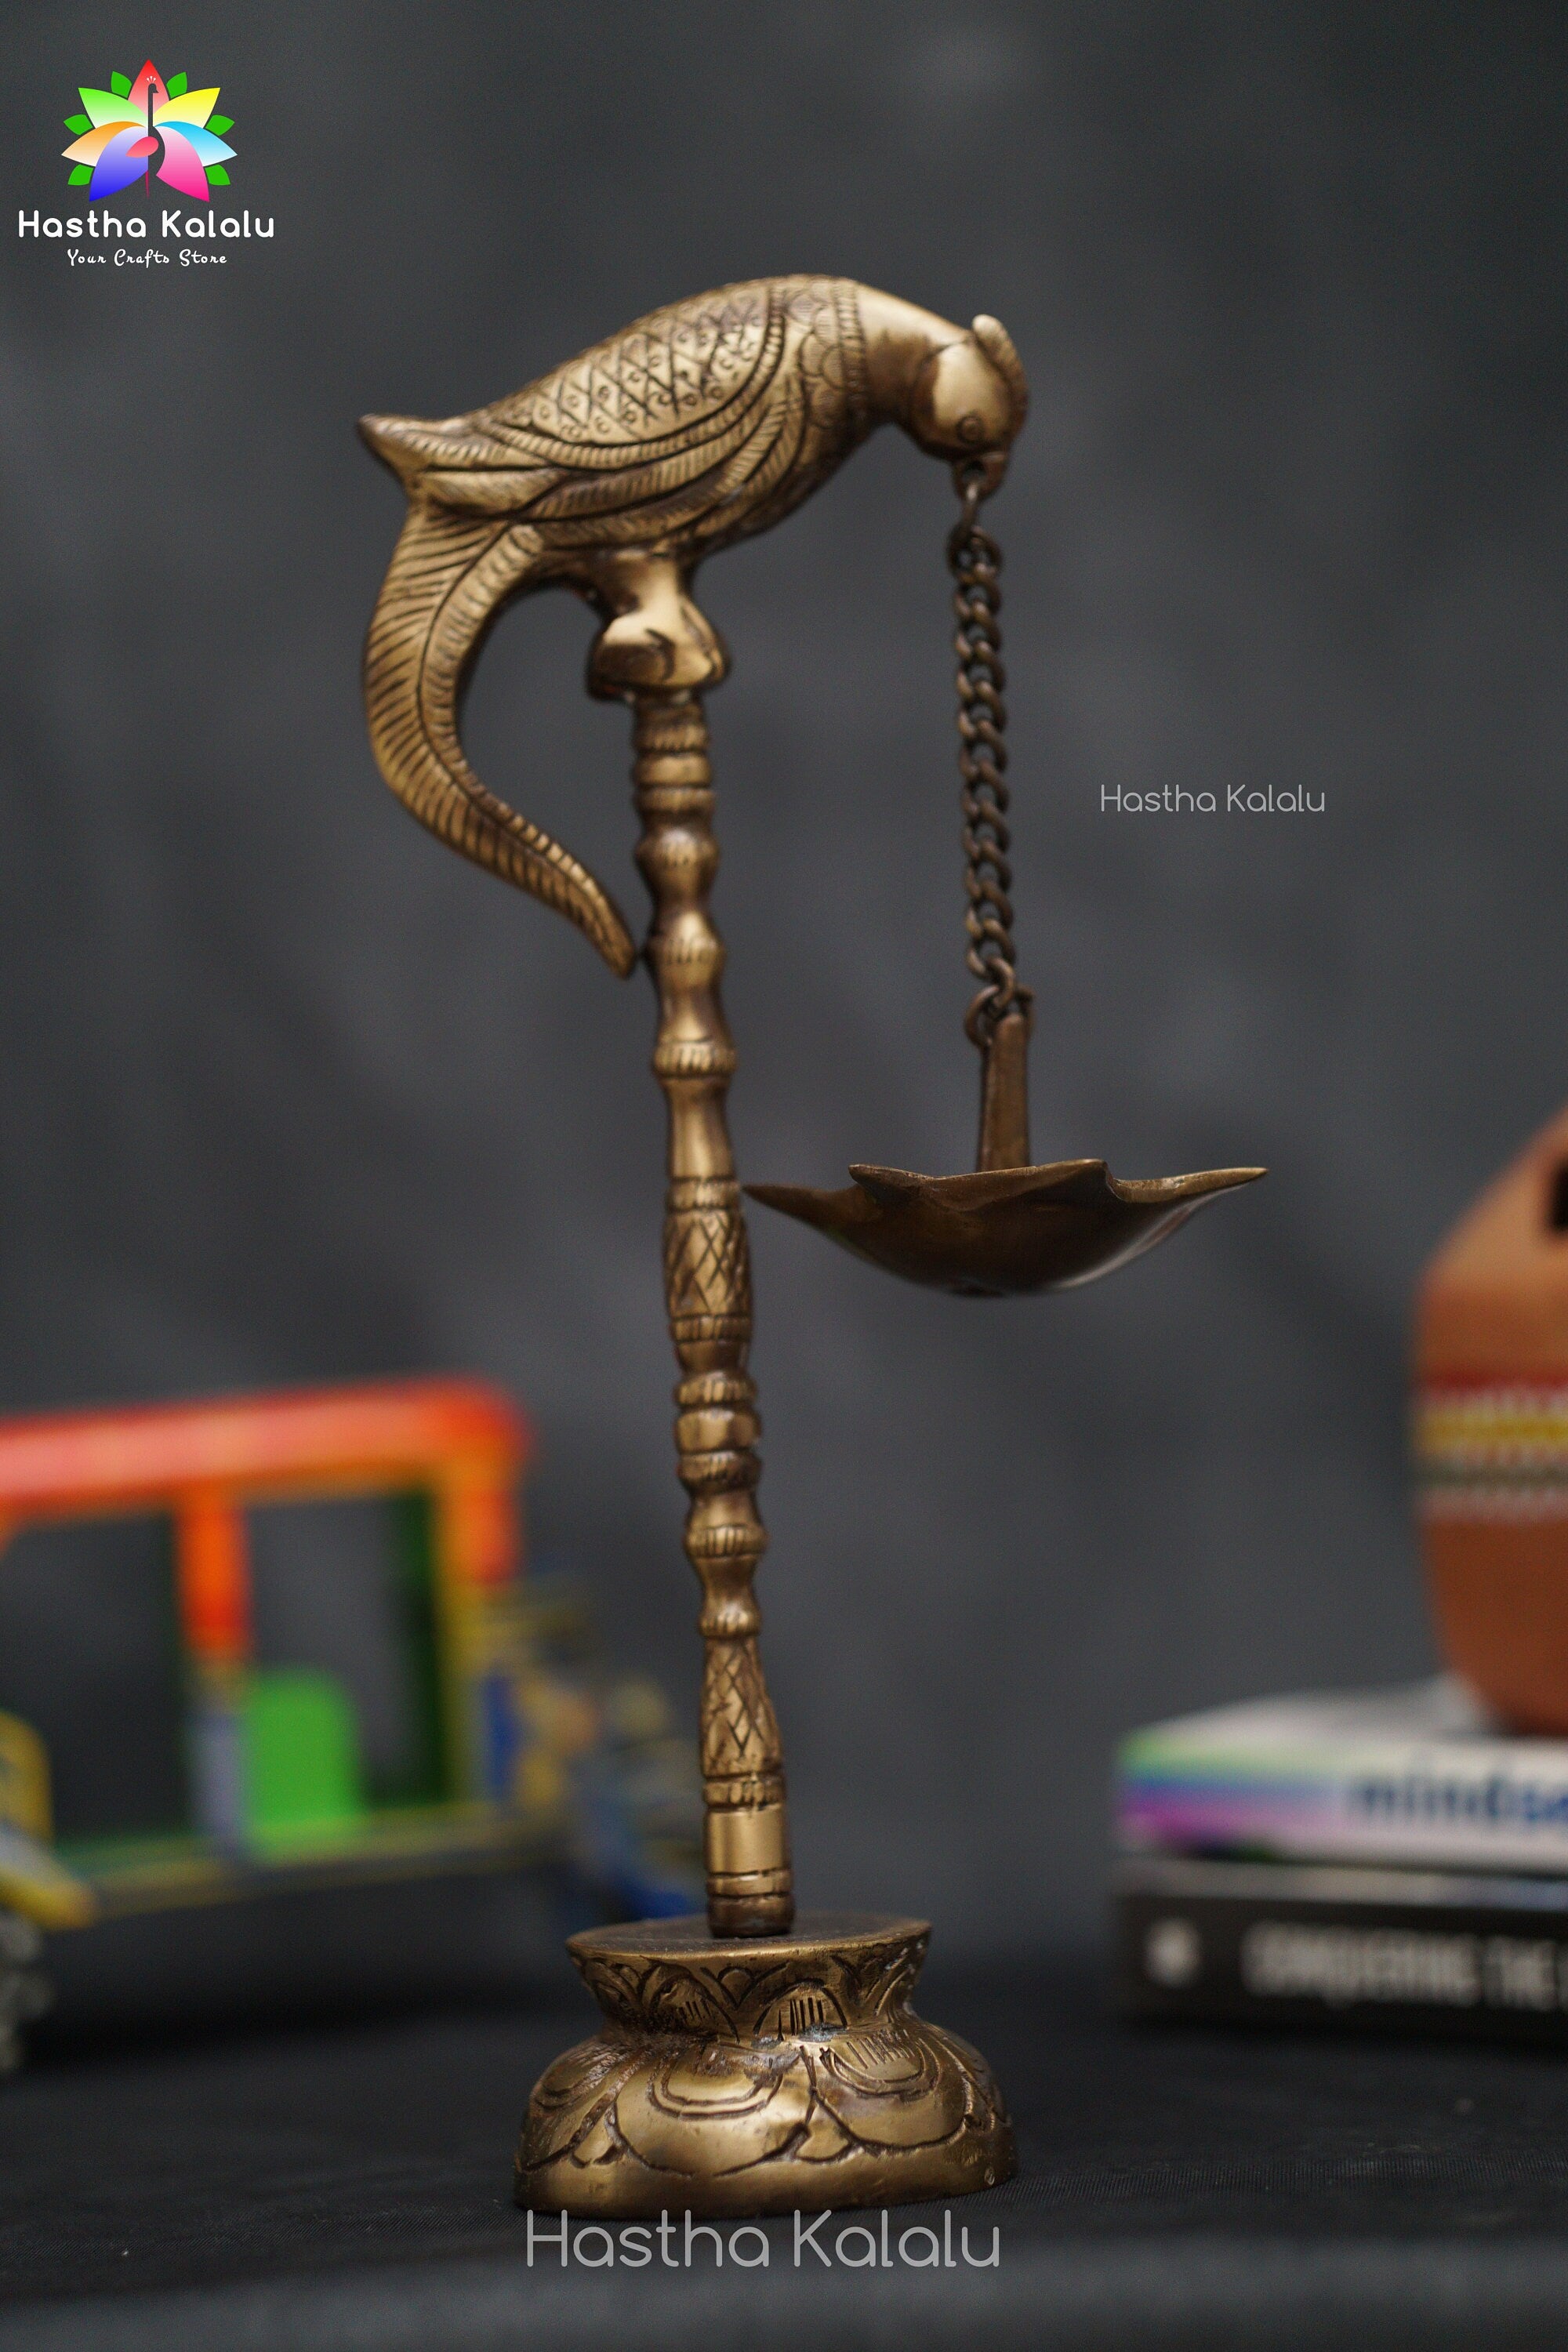 Buy Peacock Lamp Brass Diya  Antique Brass Oil Lamp – Ashtok